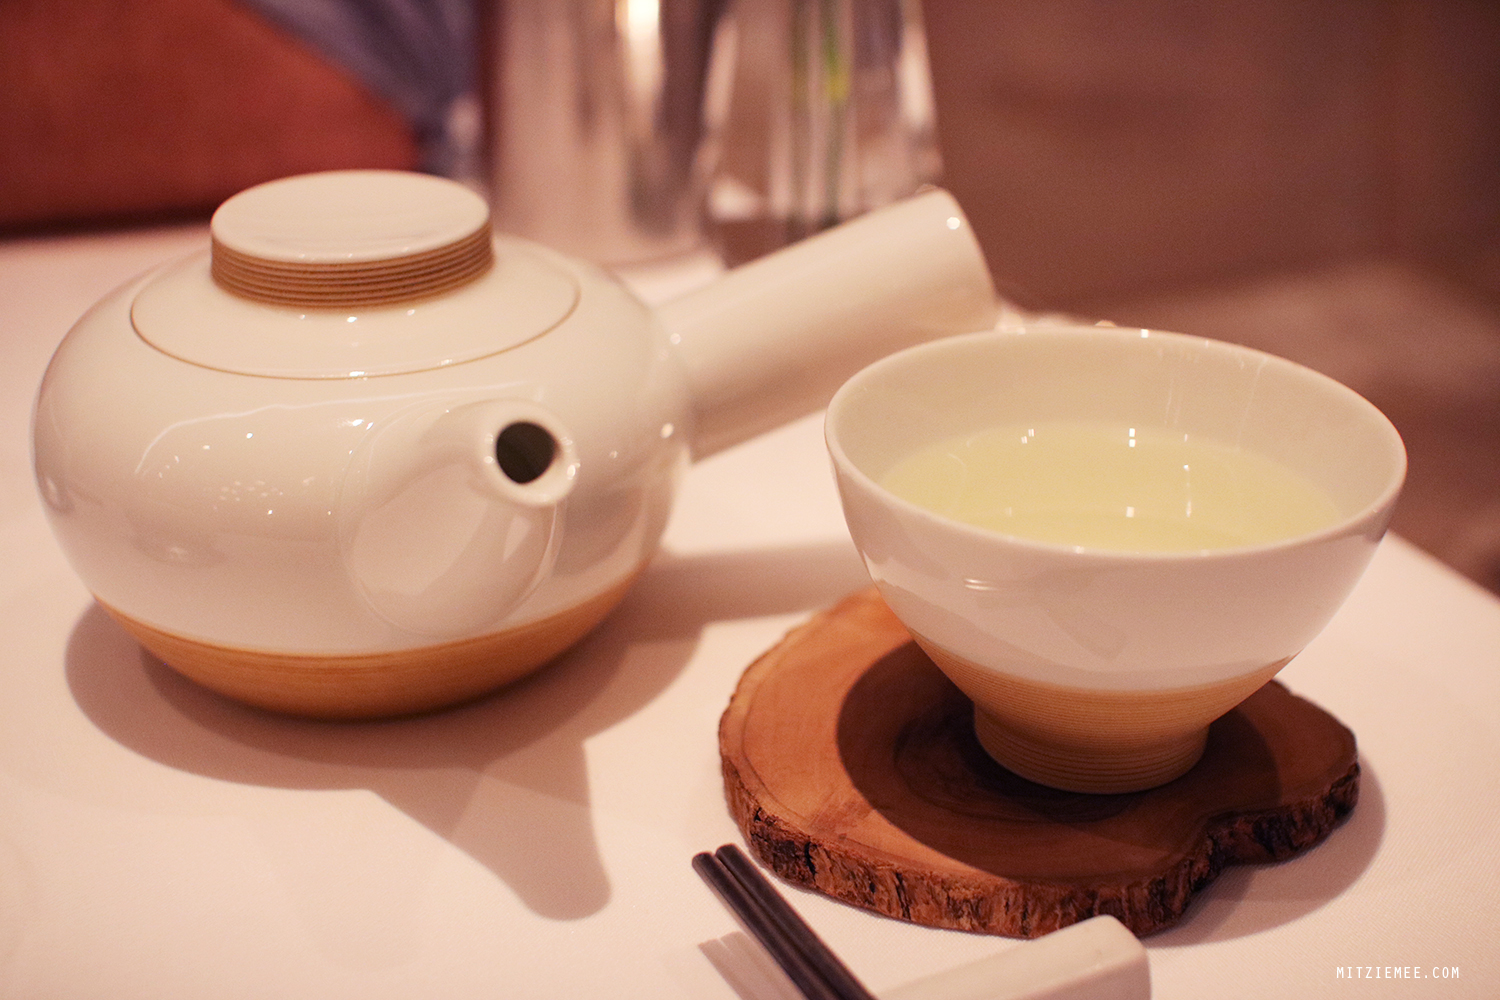 Green tea at Jungsik, Korean restaurant in New York City